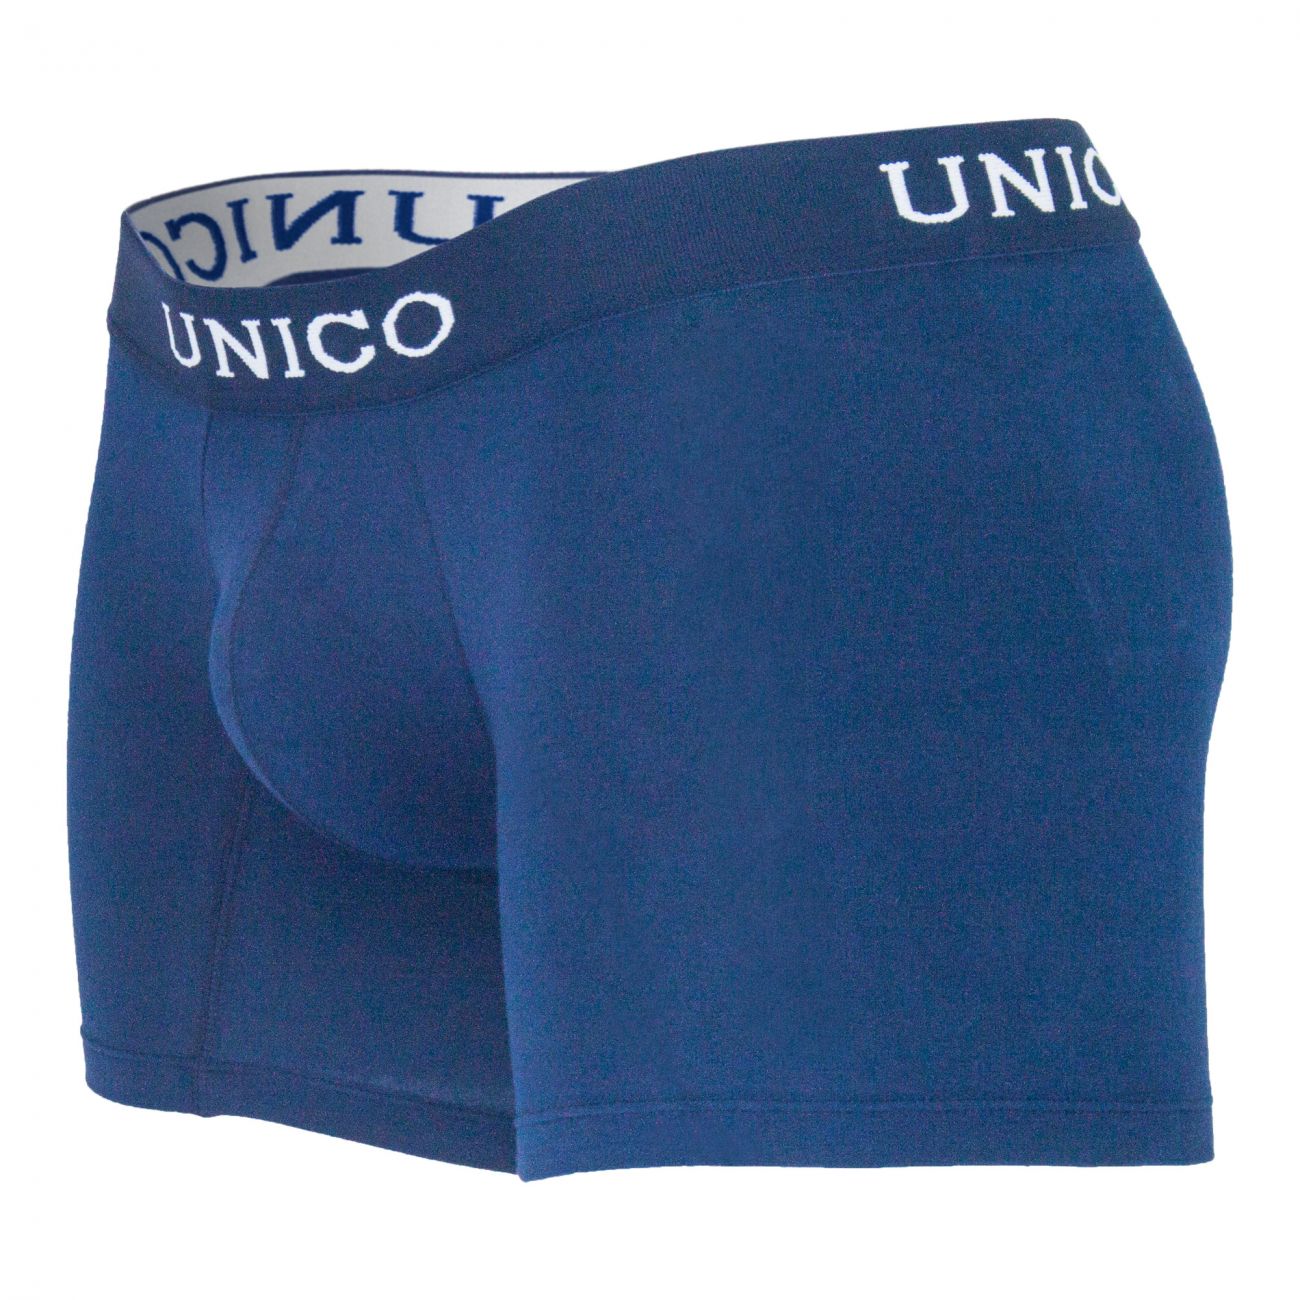 Unico 9610090182 Boxer Briefs Profundo Blue